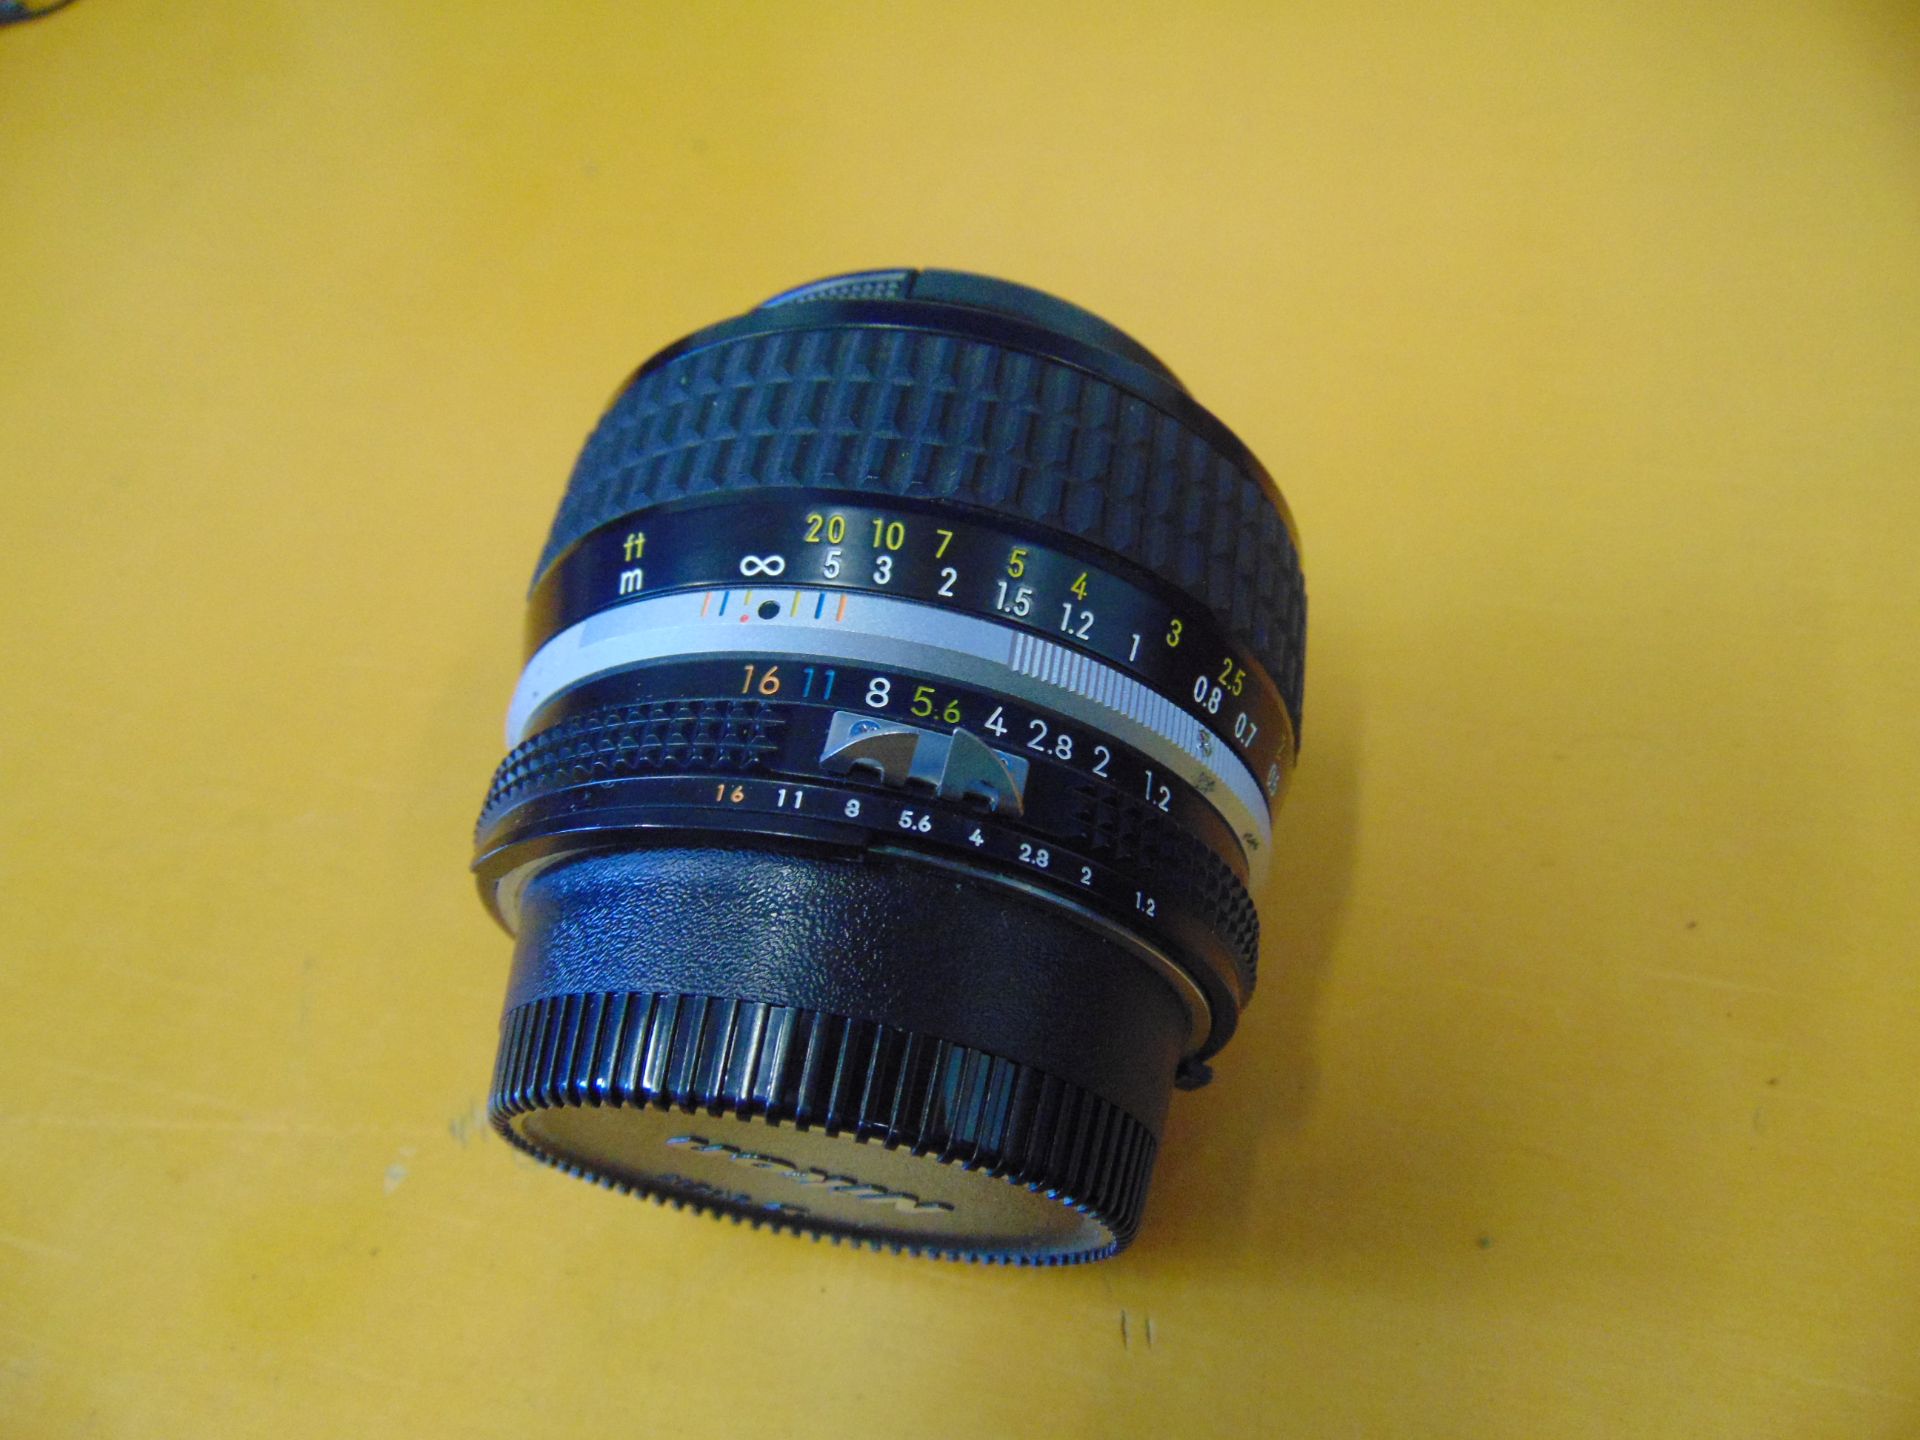 Nikon 50mm F1.2D AIS Nikkor Lens - Image 2 of 6